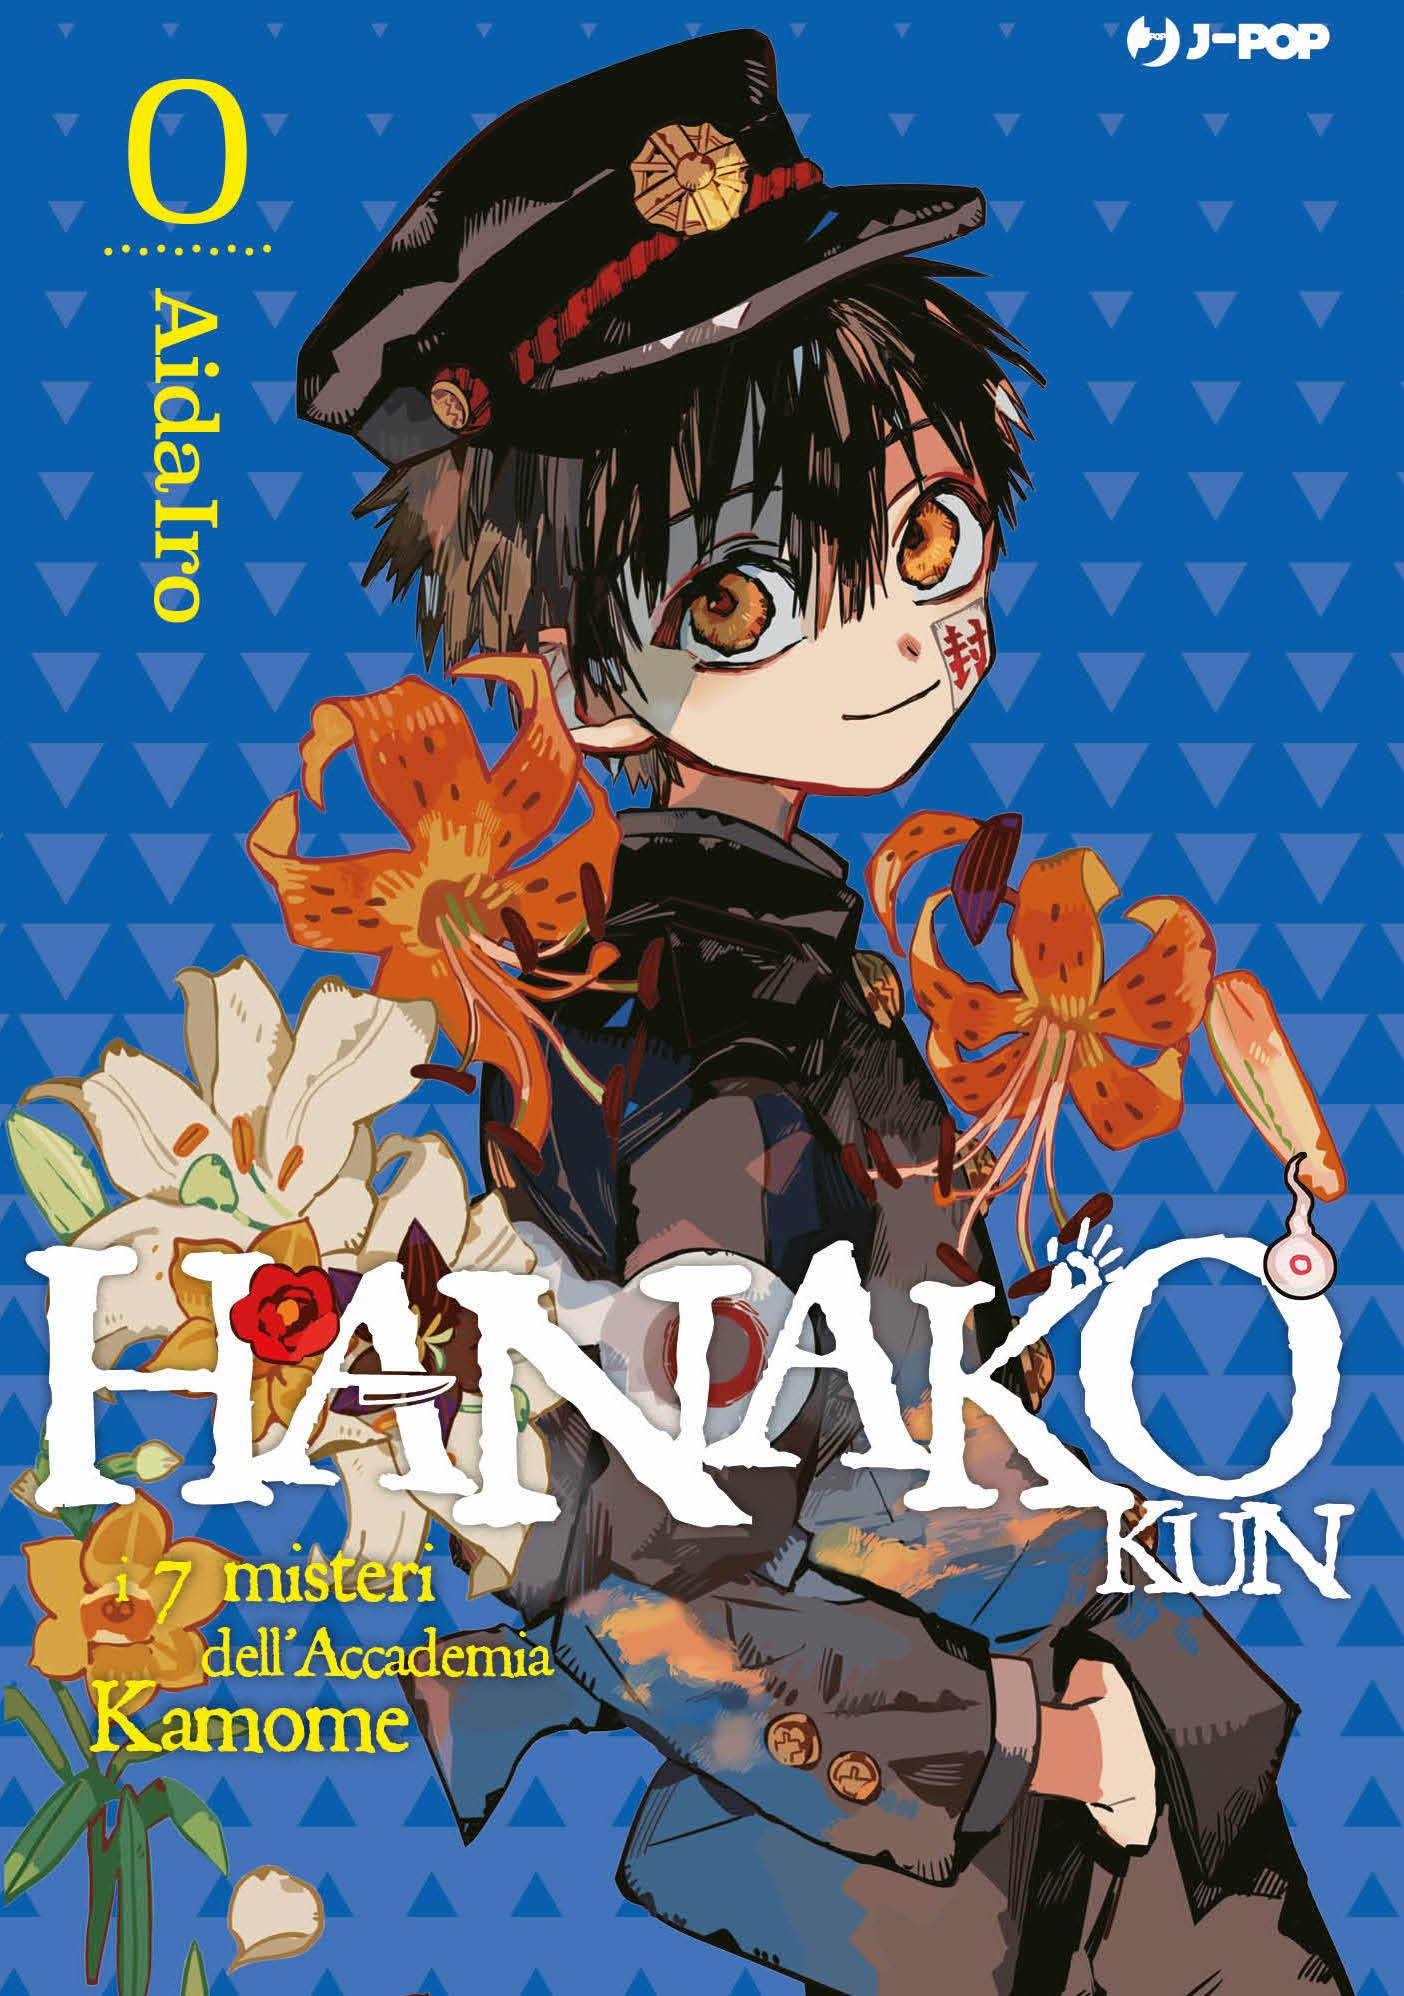 Hanako-kun – I sette misteri dell'Accademia Kamome vol. 0, tra le novità BD Edizioni J-Pop Manga del 9 Febbraio 2022